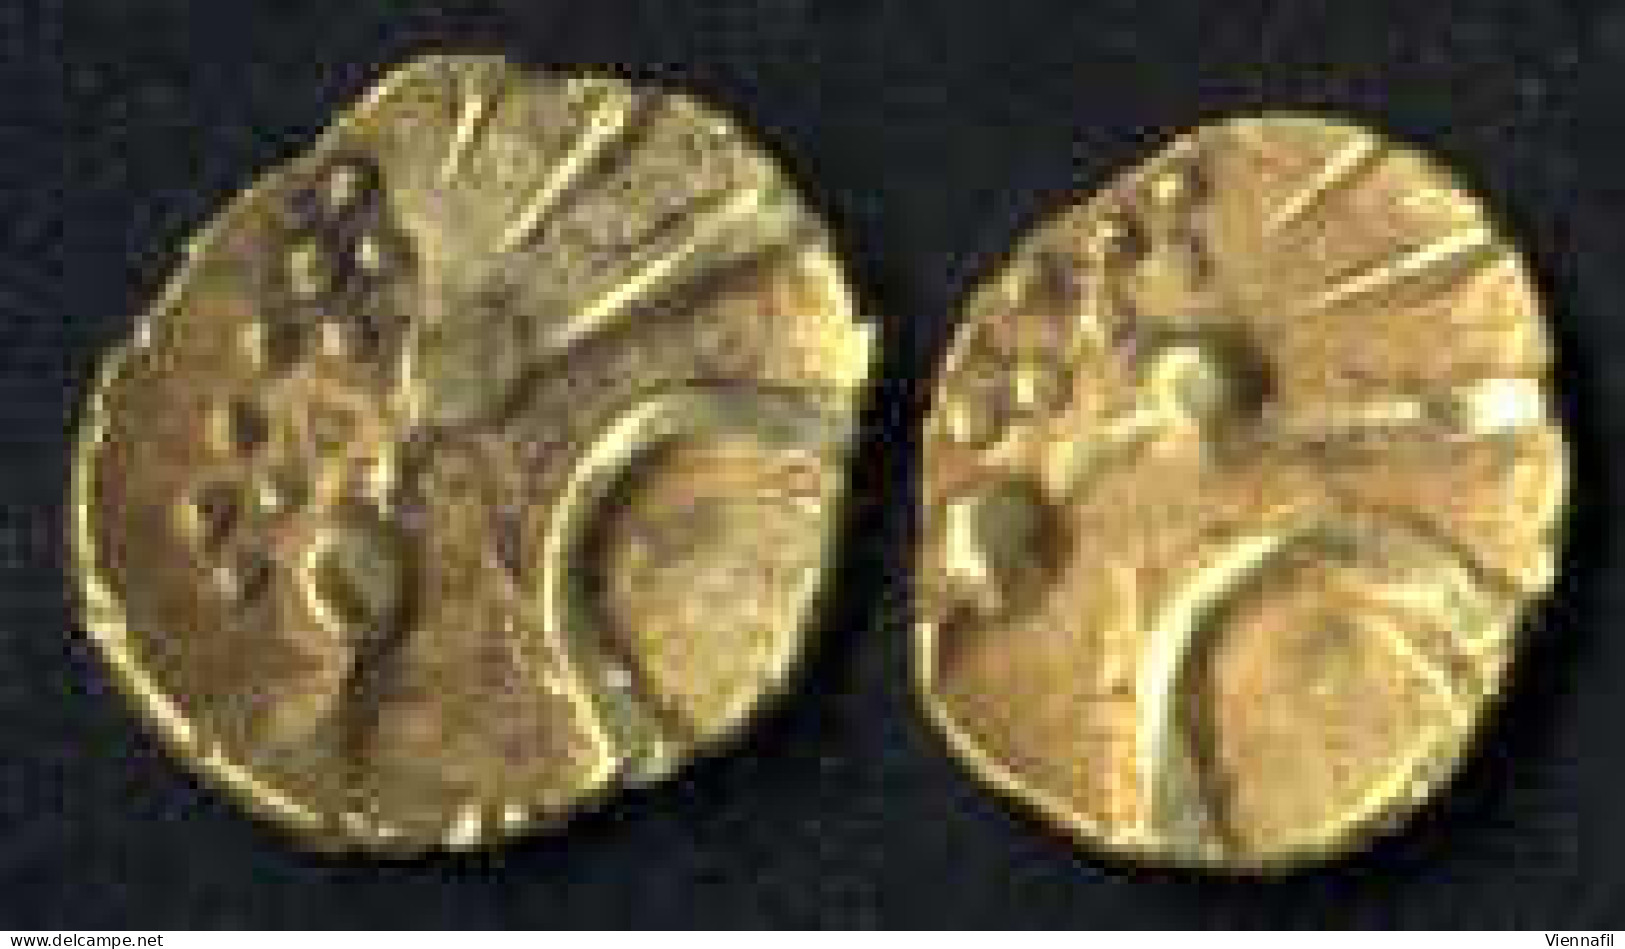 Cochin, Rajahsv. Cochin, 1600-1750, Fanam Gold Ohne Jahr Und Münzstätte, Mich NI&amp;CS 1126ff, Vorzüglich 2 Stück - India